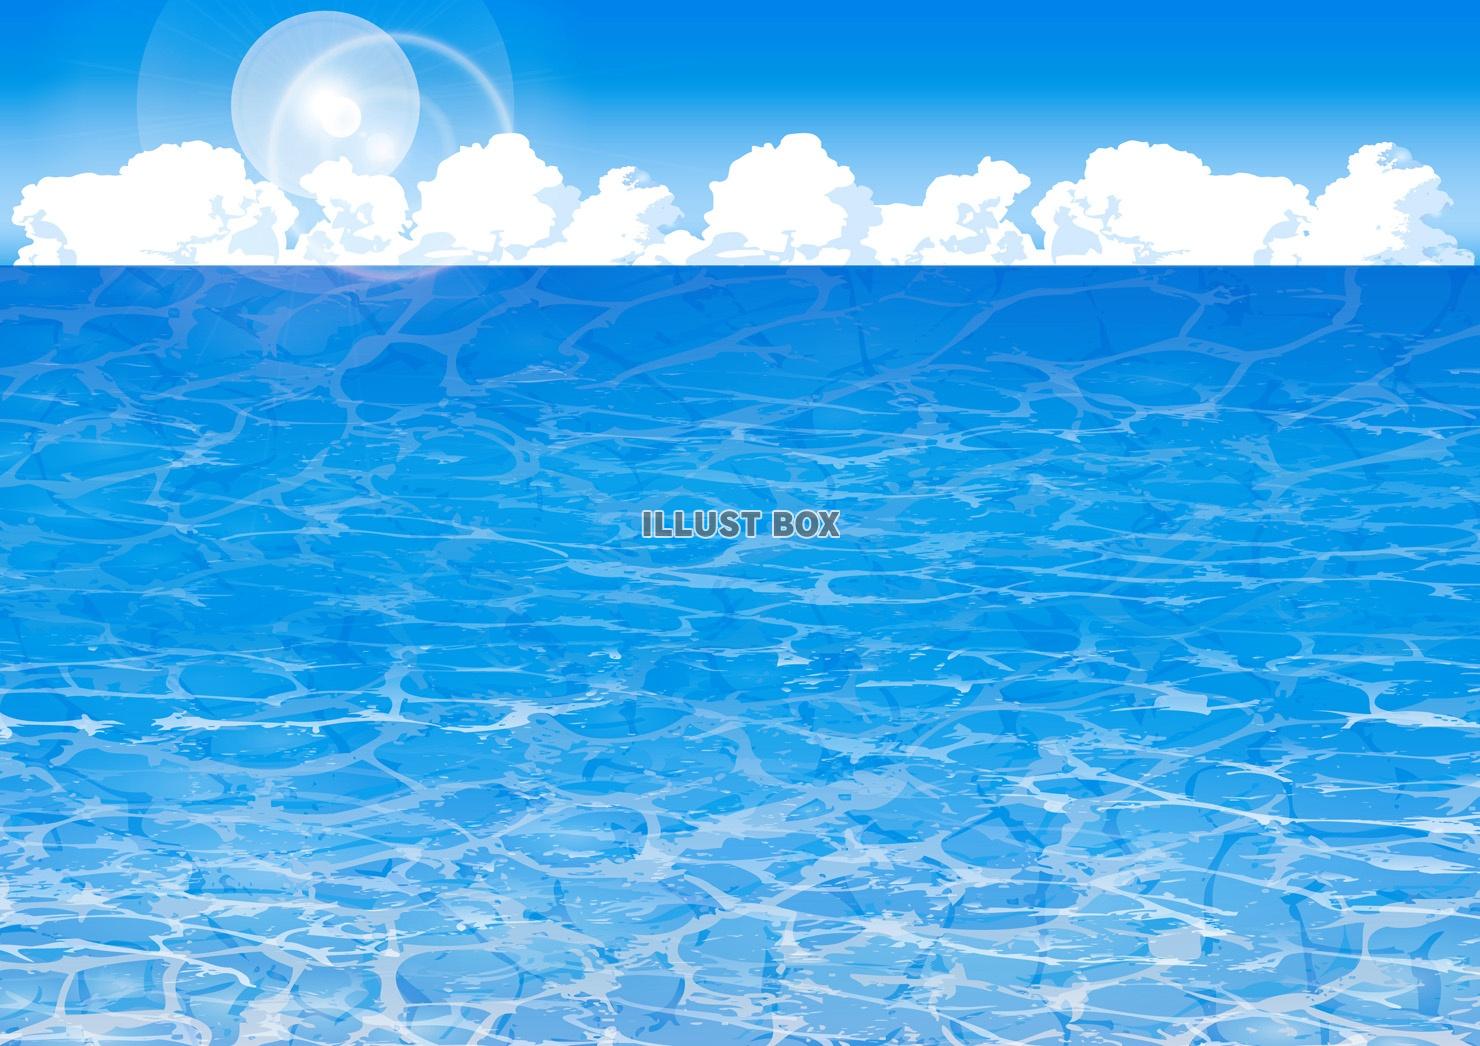 無料イラスト 青空入道雲海波模様背景素材壁紙残暑見舞いグアム島透明な海透明